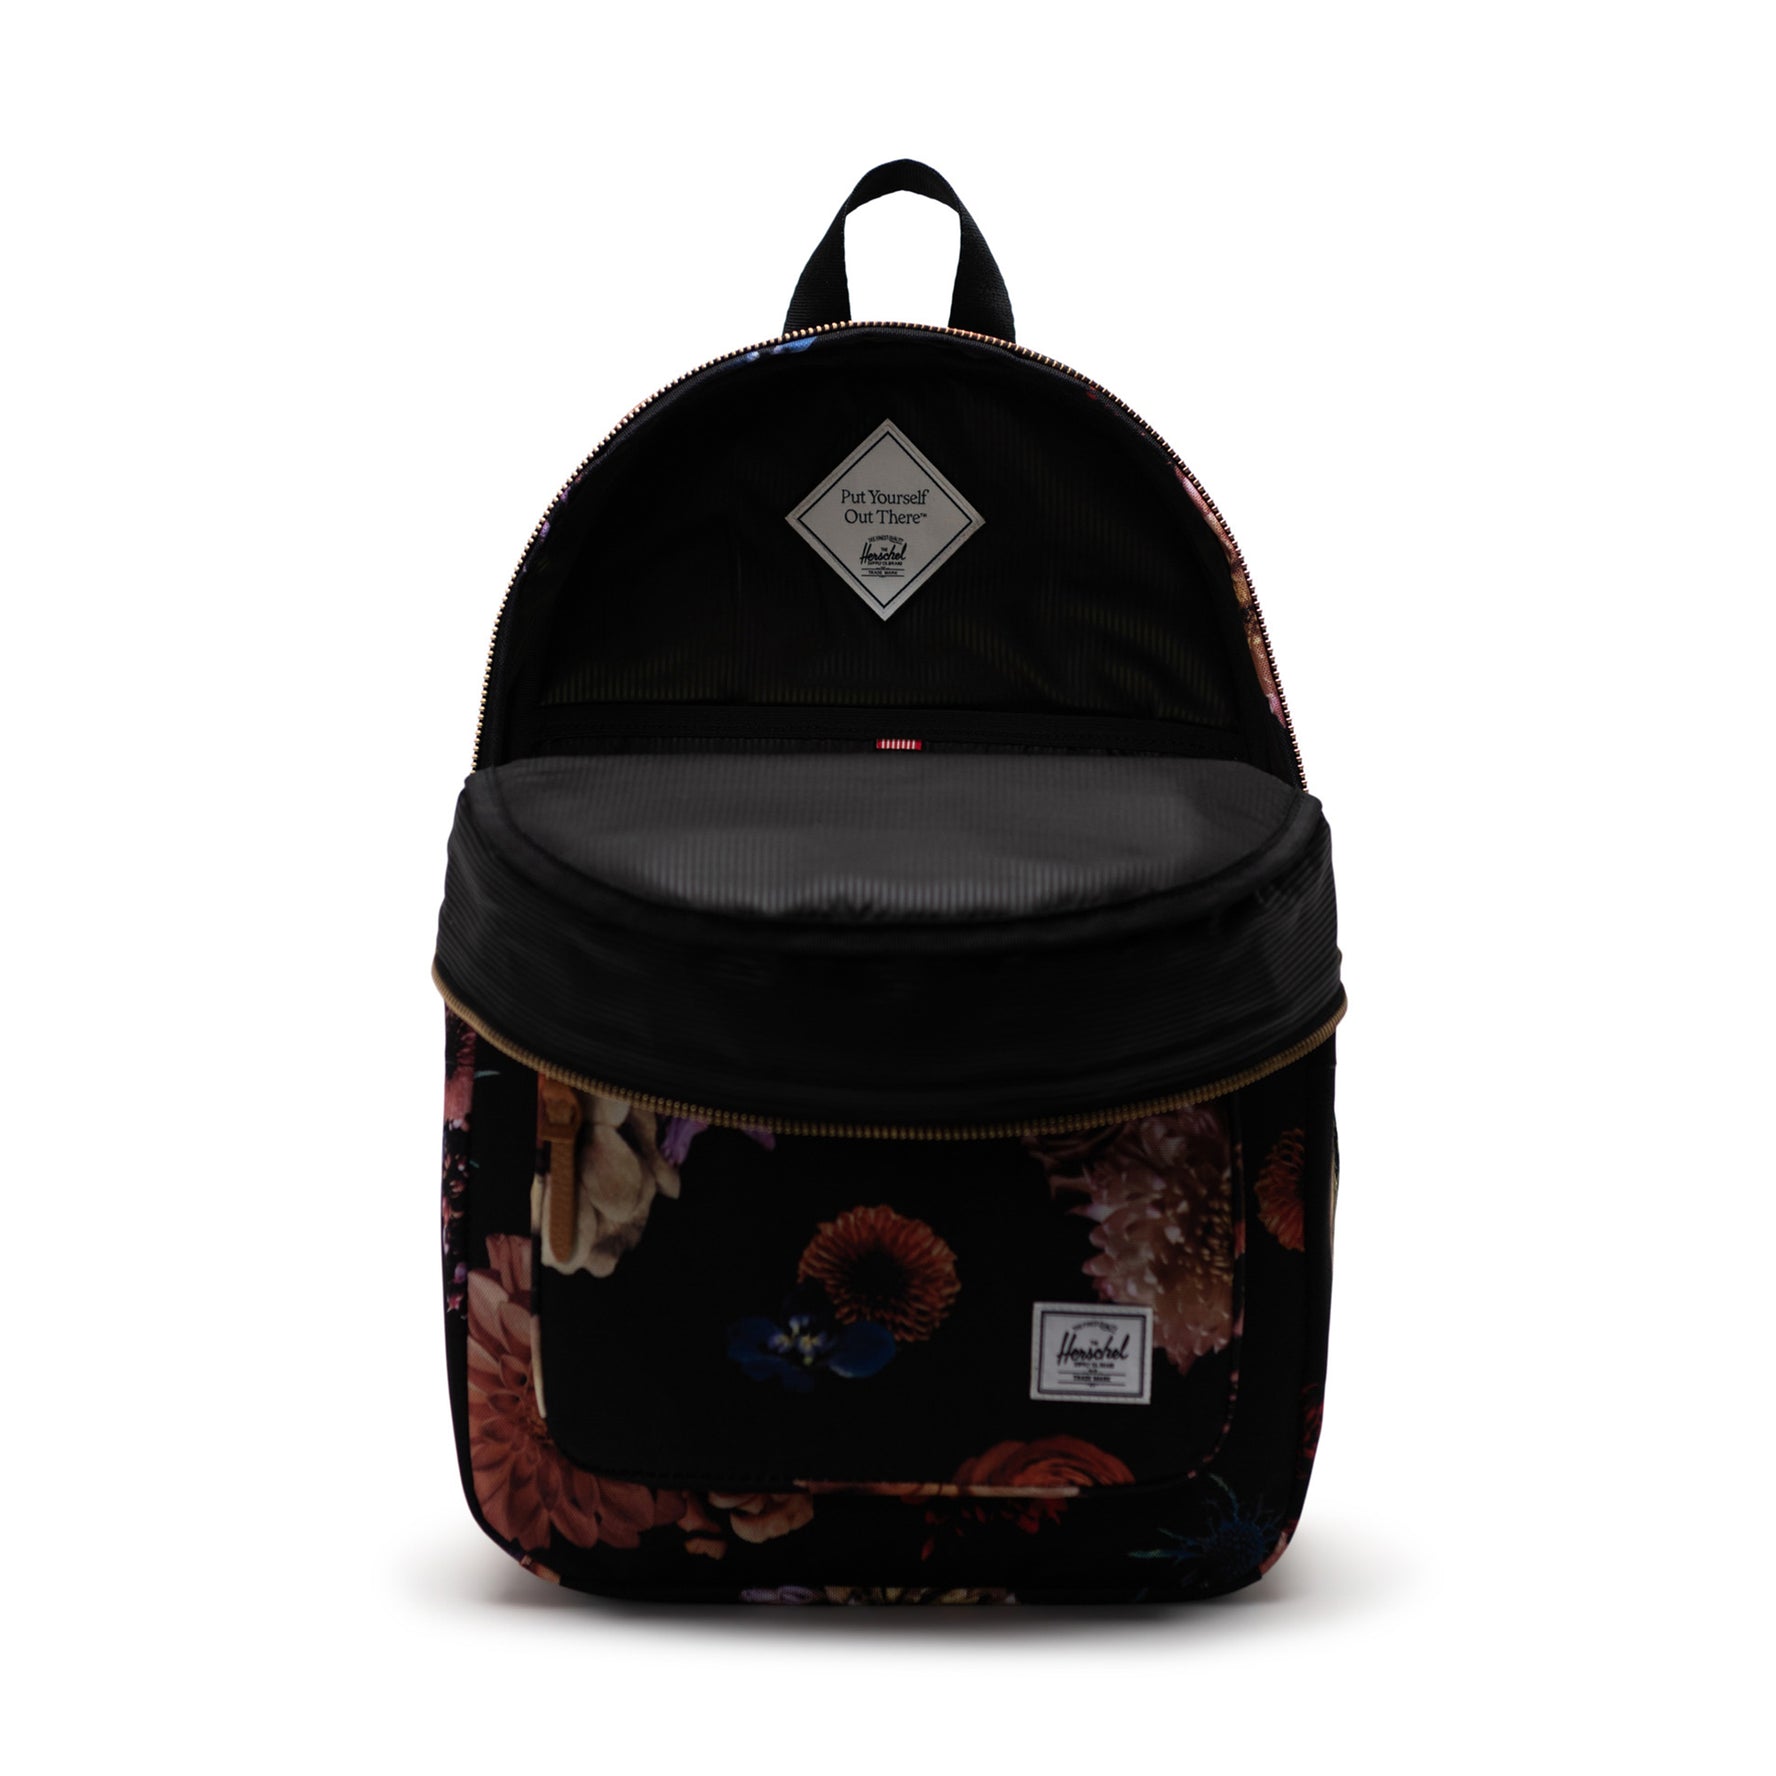 Settlement Backpack-Backpack-Herschel Supply Co-Floral Revival-SchoolBagsAndStuff